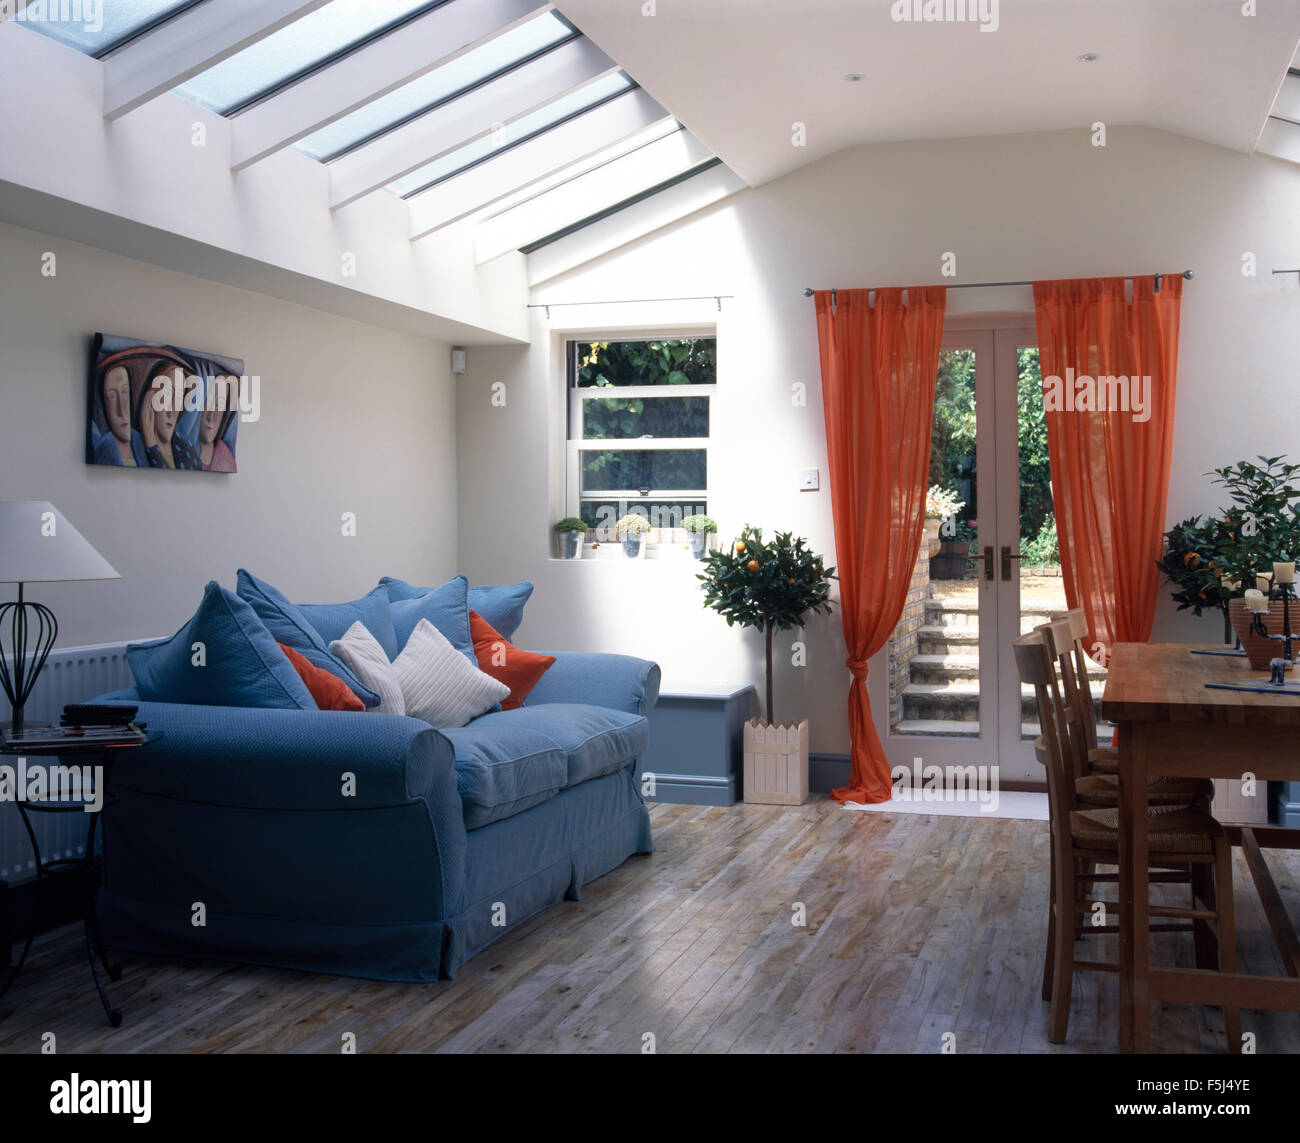 Blaues Sofa und Orange Voile Vorhänge in Wohn- und Esszimmer-Erweiterung  mit Holzboden Stockfotografie - Alamy